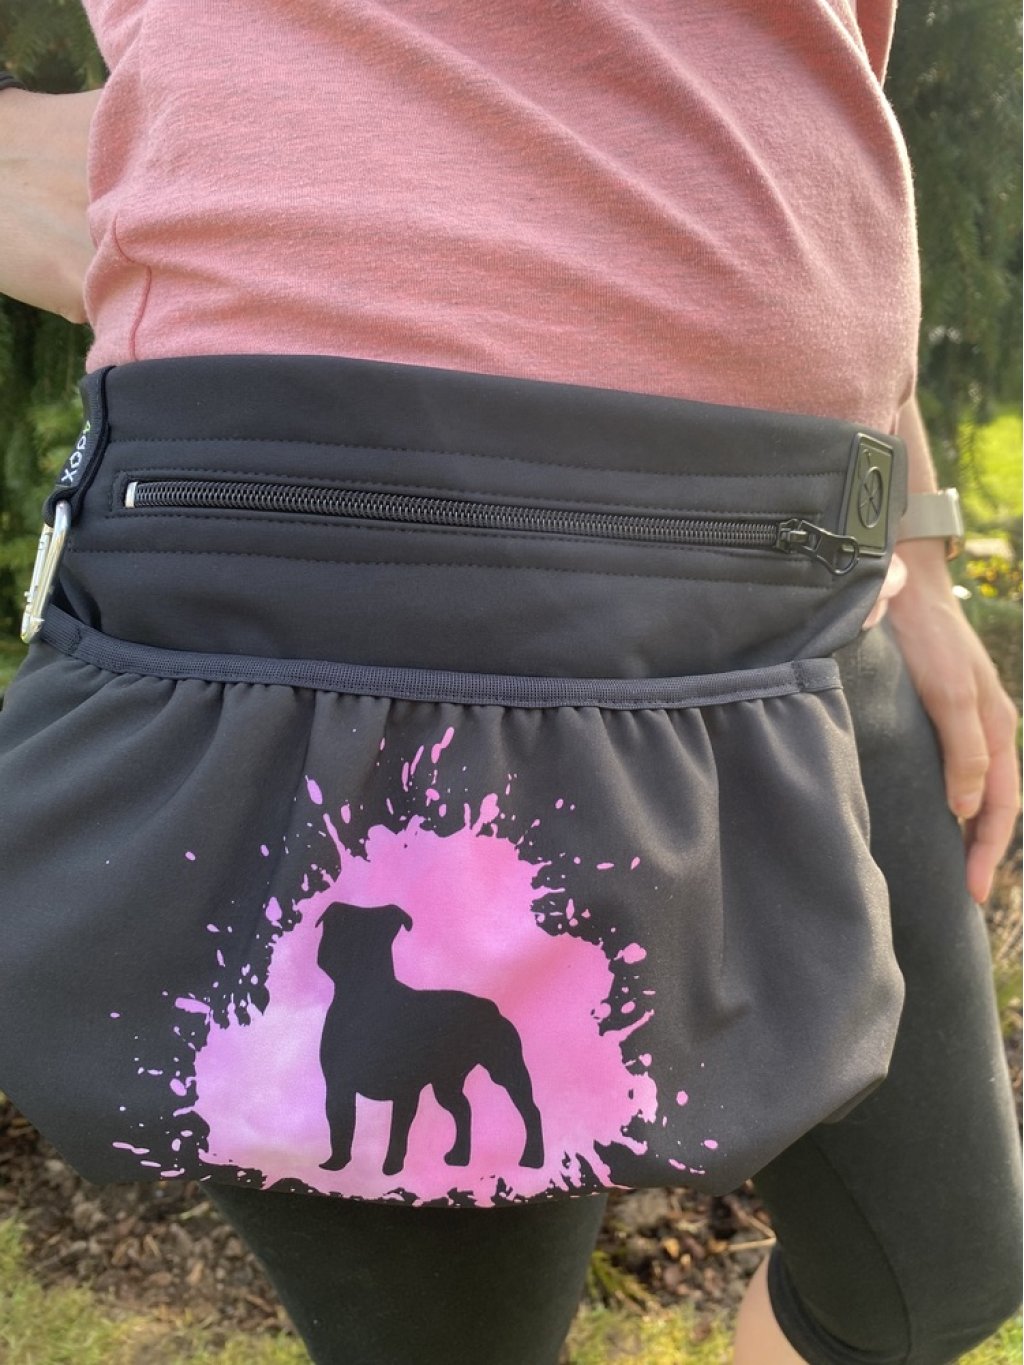 Litterbox XL 1K pink Staffordshire Bull Terrier SBF 4dox